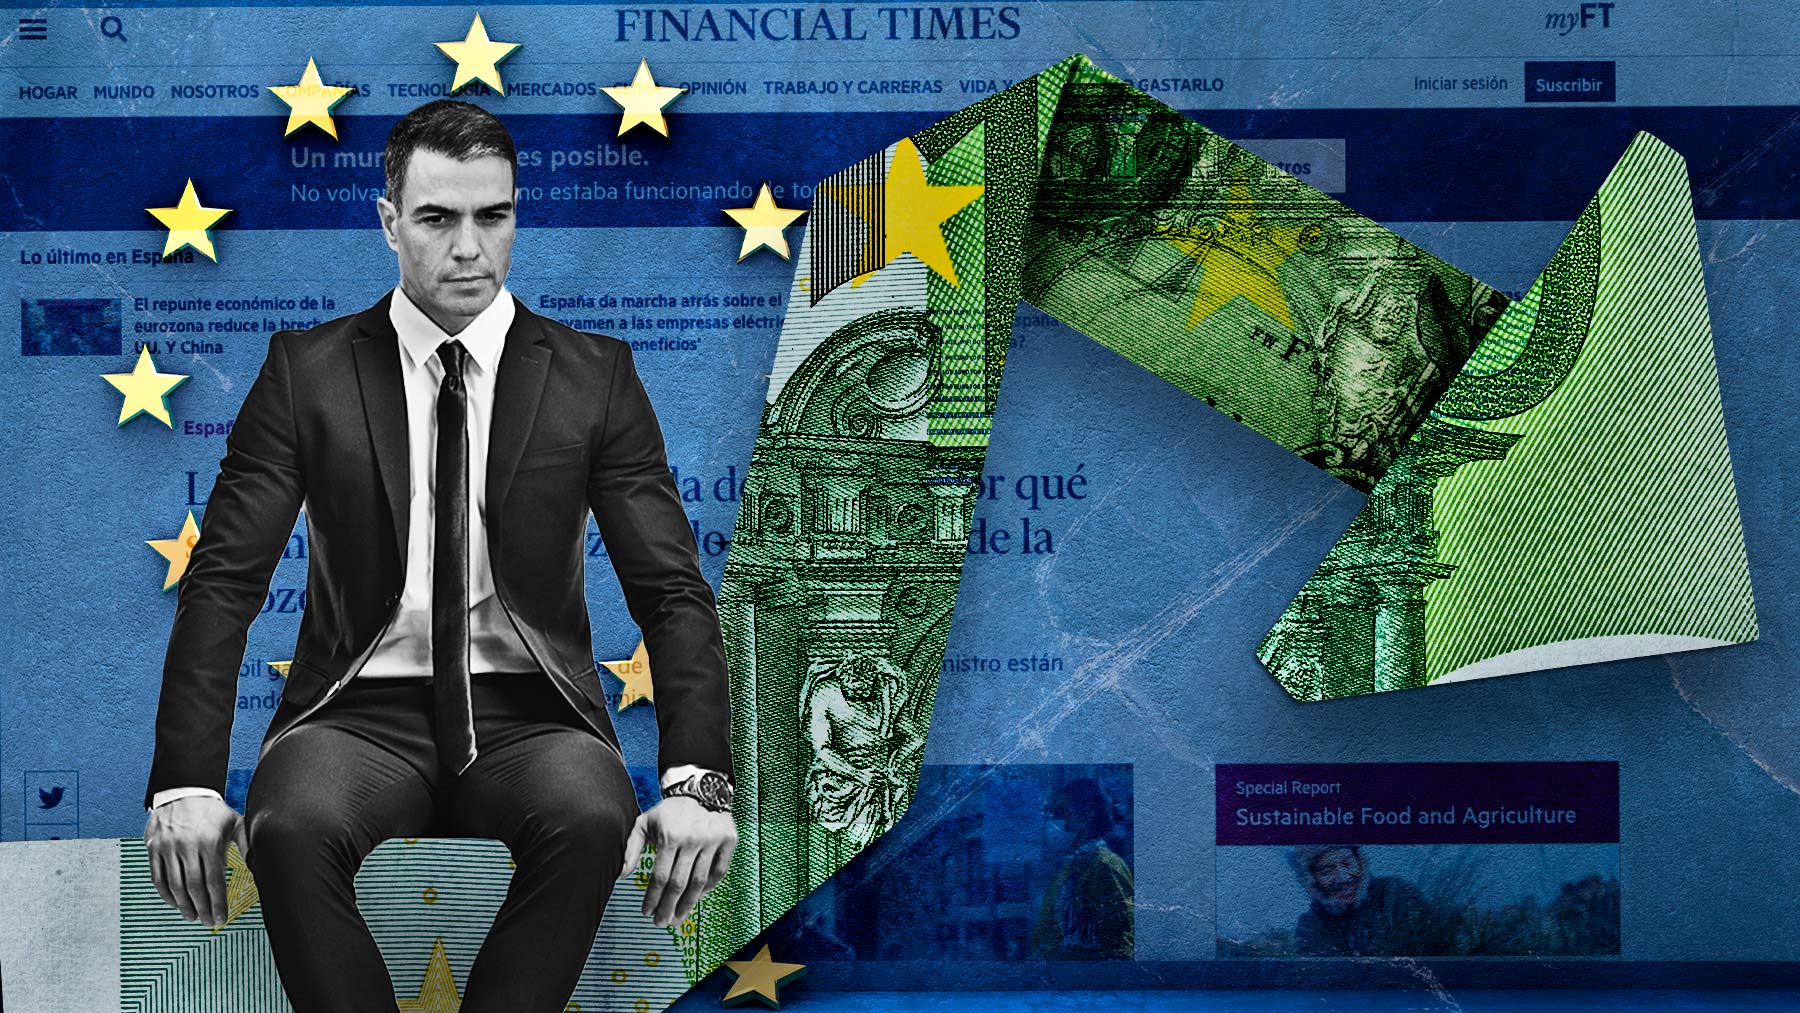 Fotomontaje ‘Financial Times’ y Pedro Sánchez